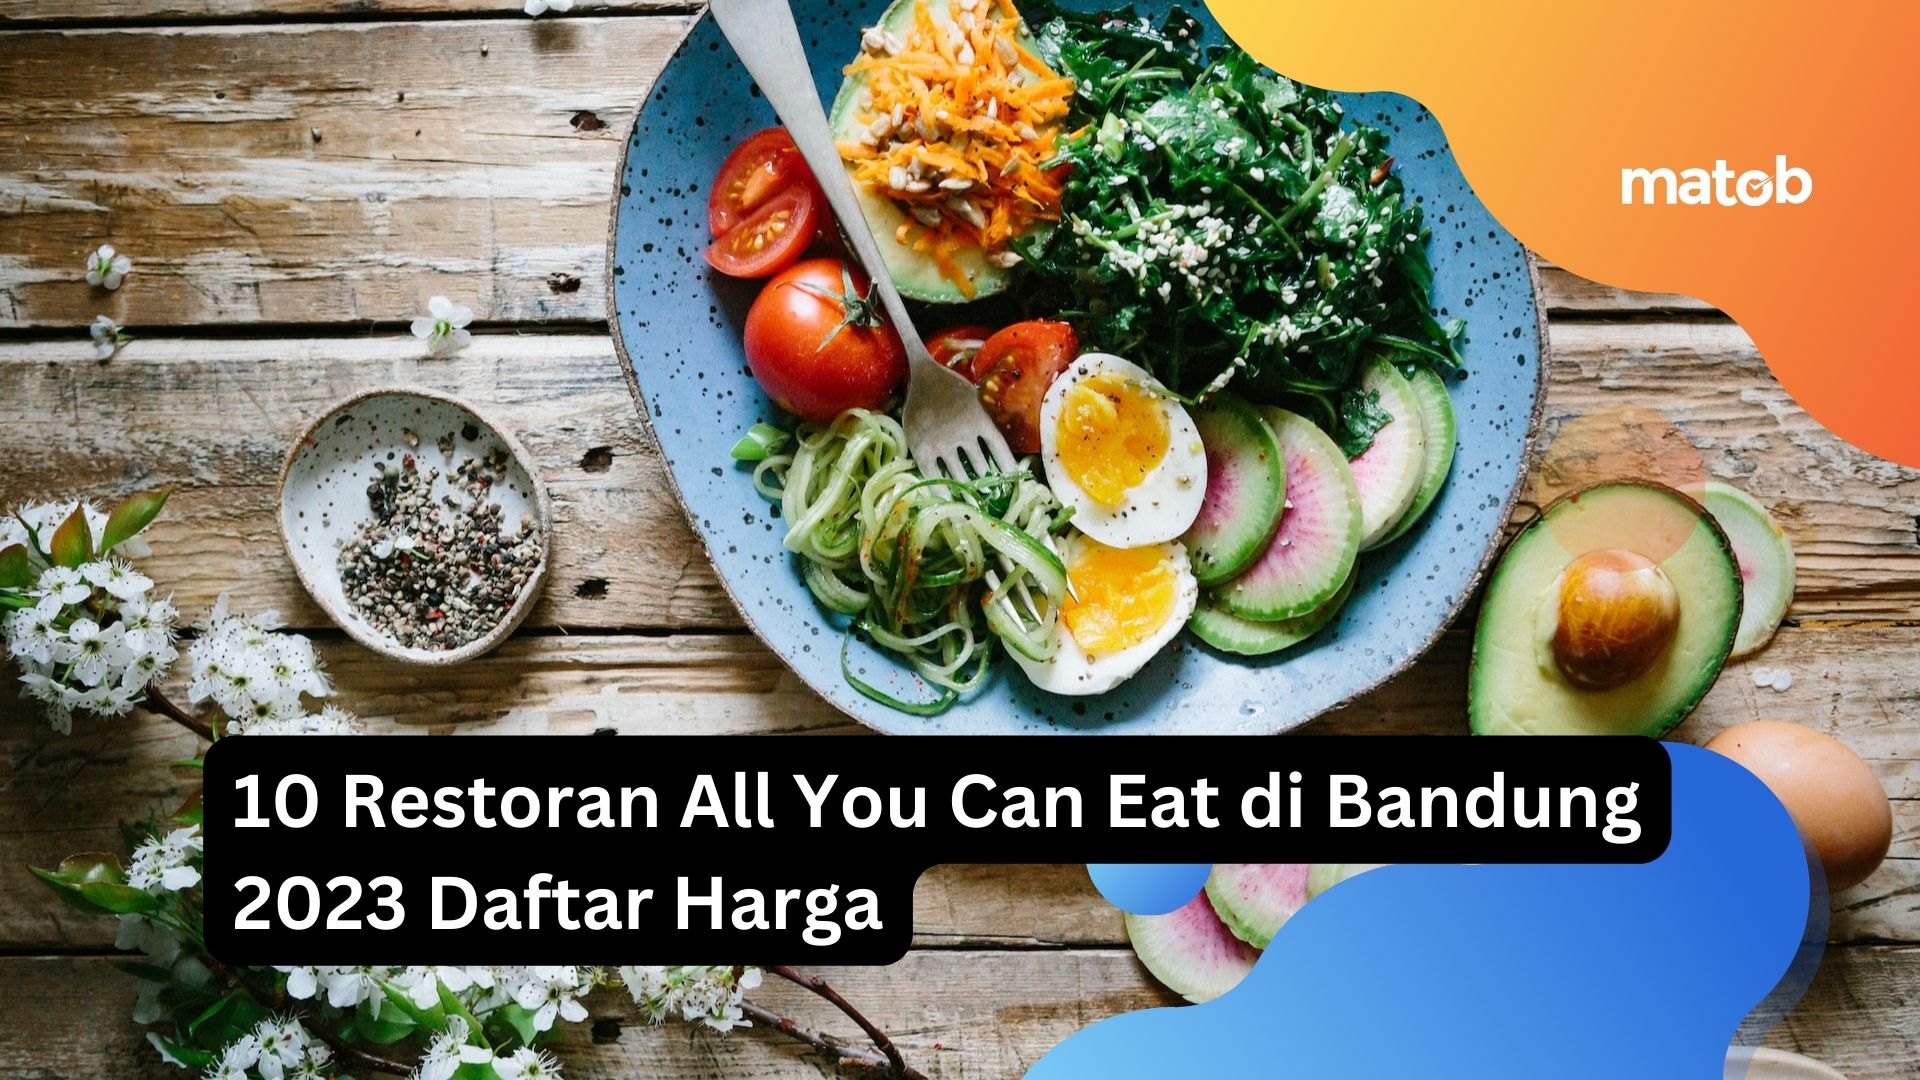 10 Restoran All You Can Eat di Bandung 2023 Daftar Harga